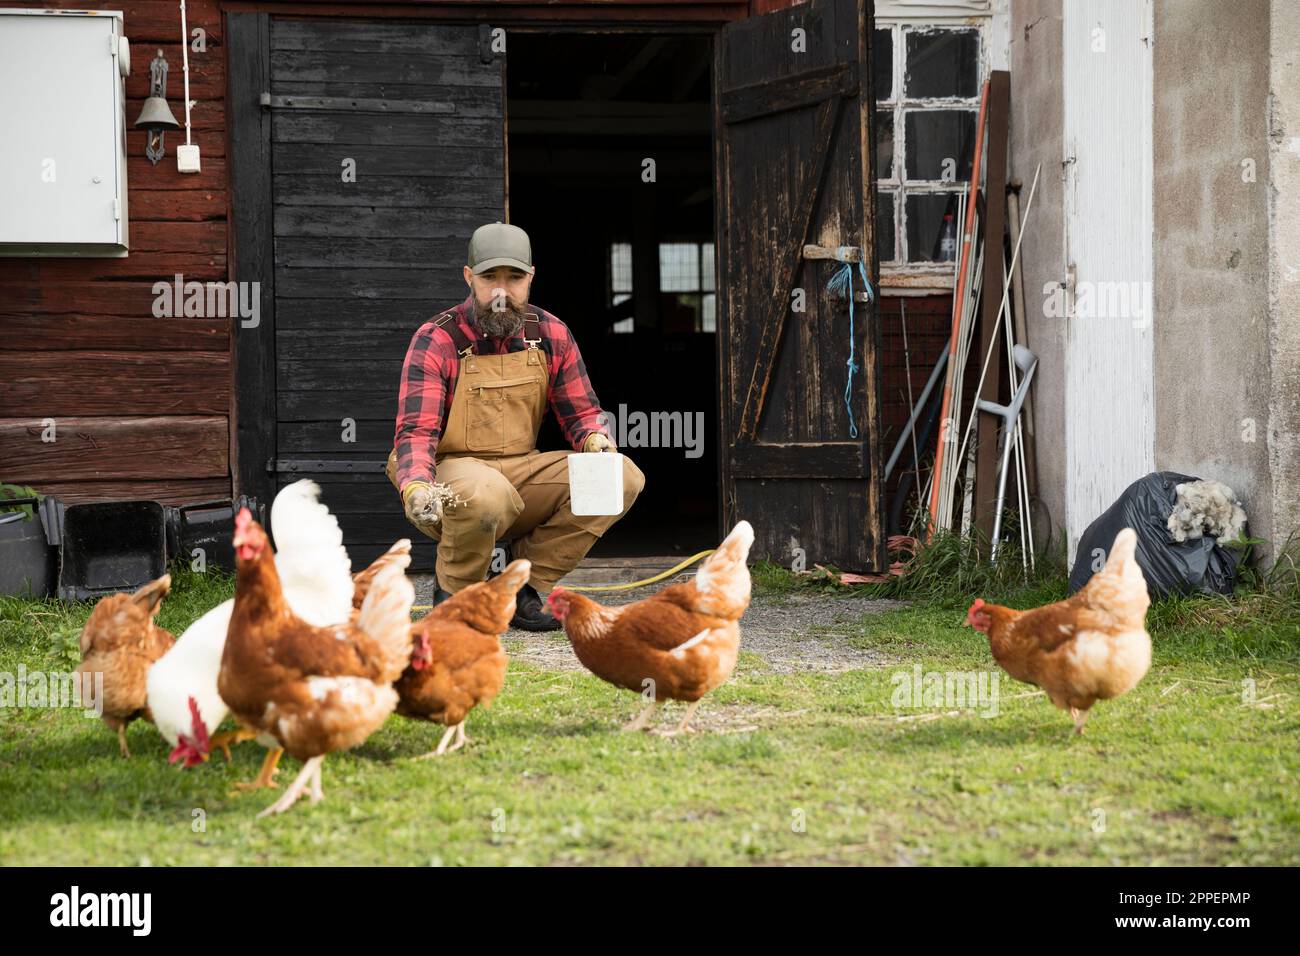 Mâle fermier nourrissant des poulets à l'extérieur Banque D'Images